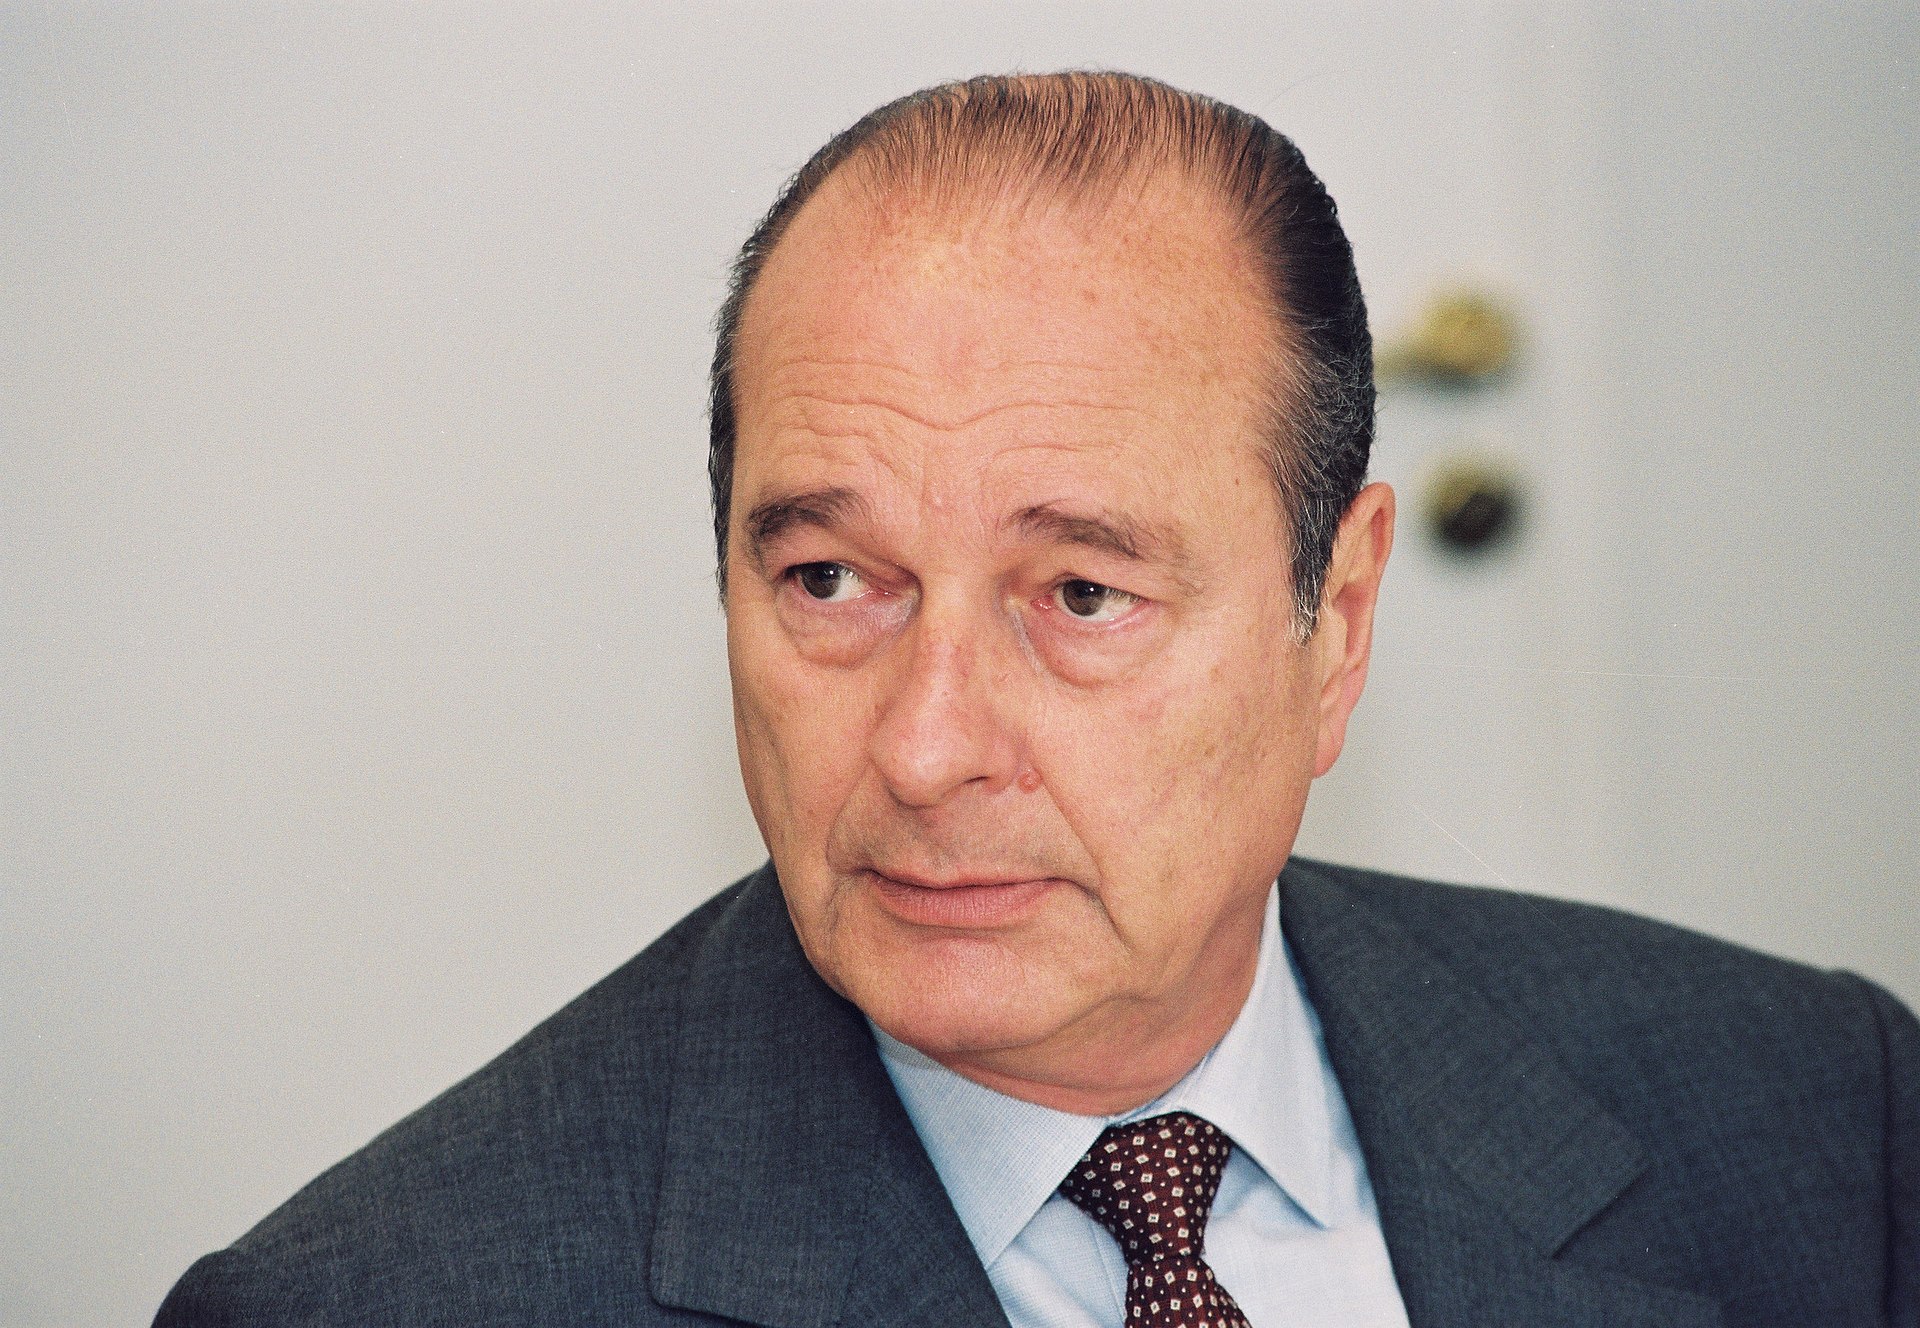 Jacques Chirac était une figure de la Ve République, dont il a incarné grandeur et controverses (Photo: Christian Lambiotte / CC BY 4.0, European Communities, 1997/ EC)